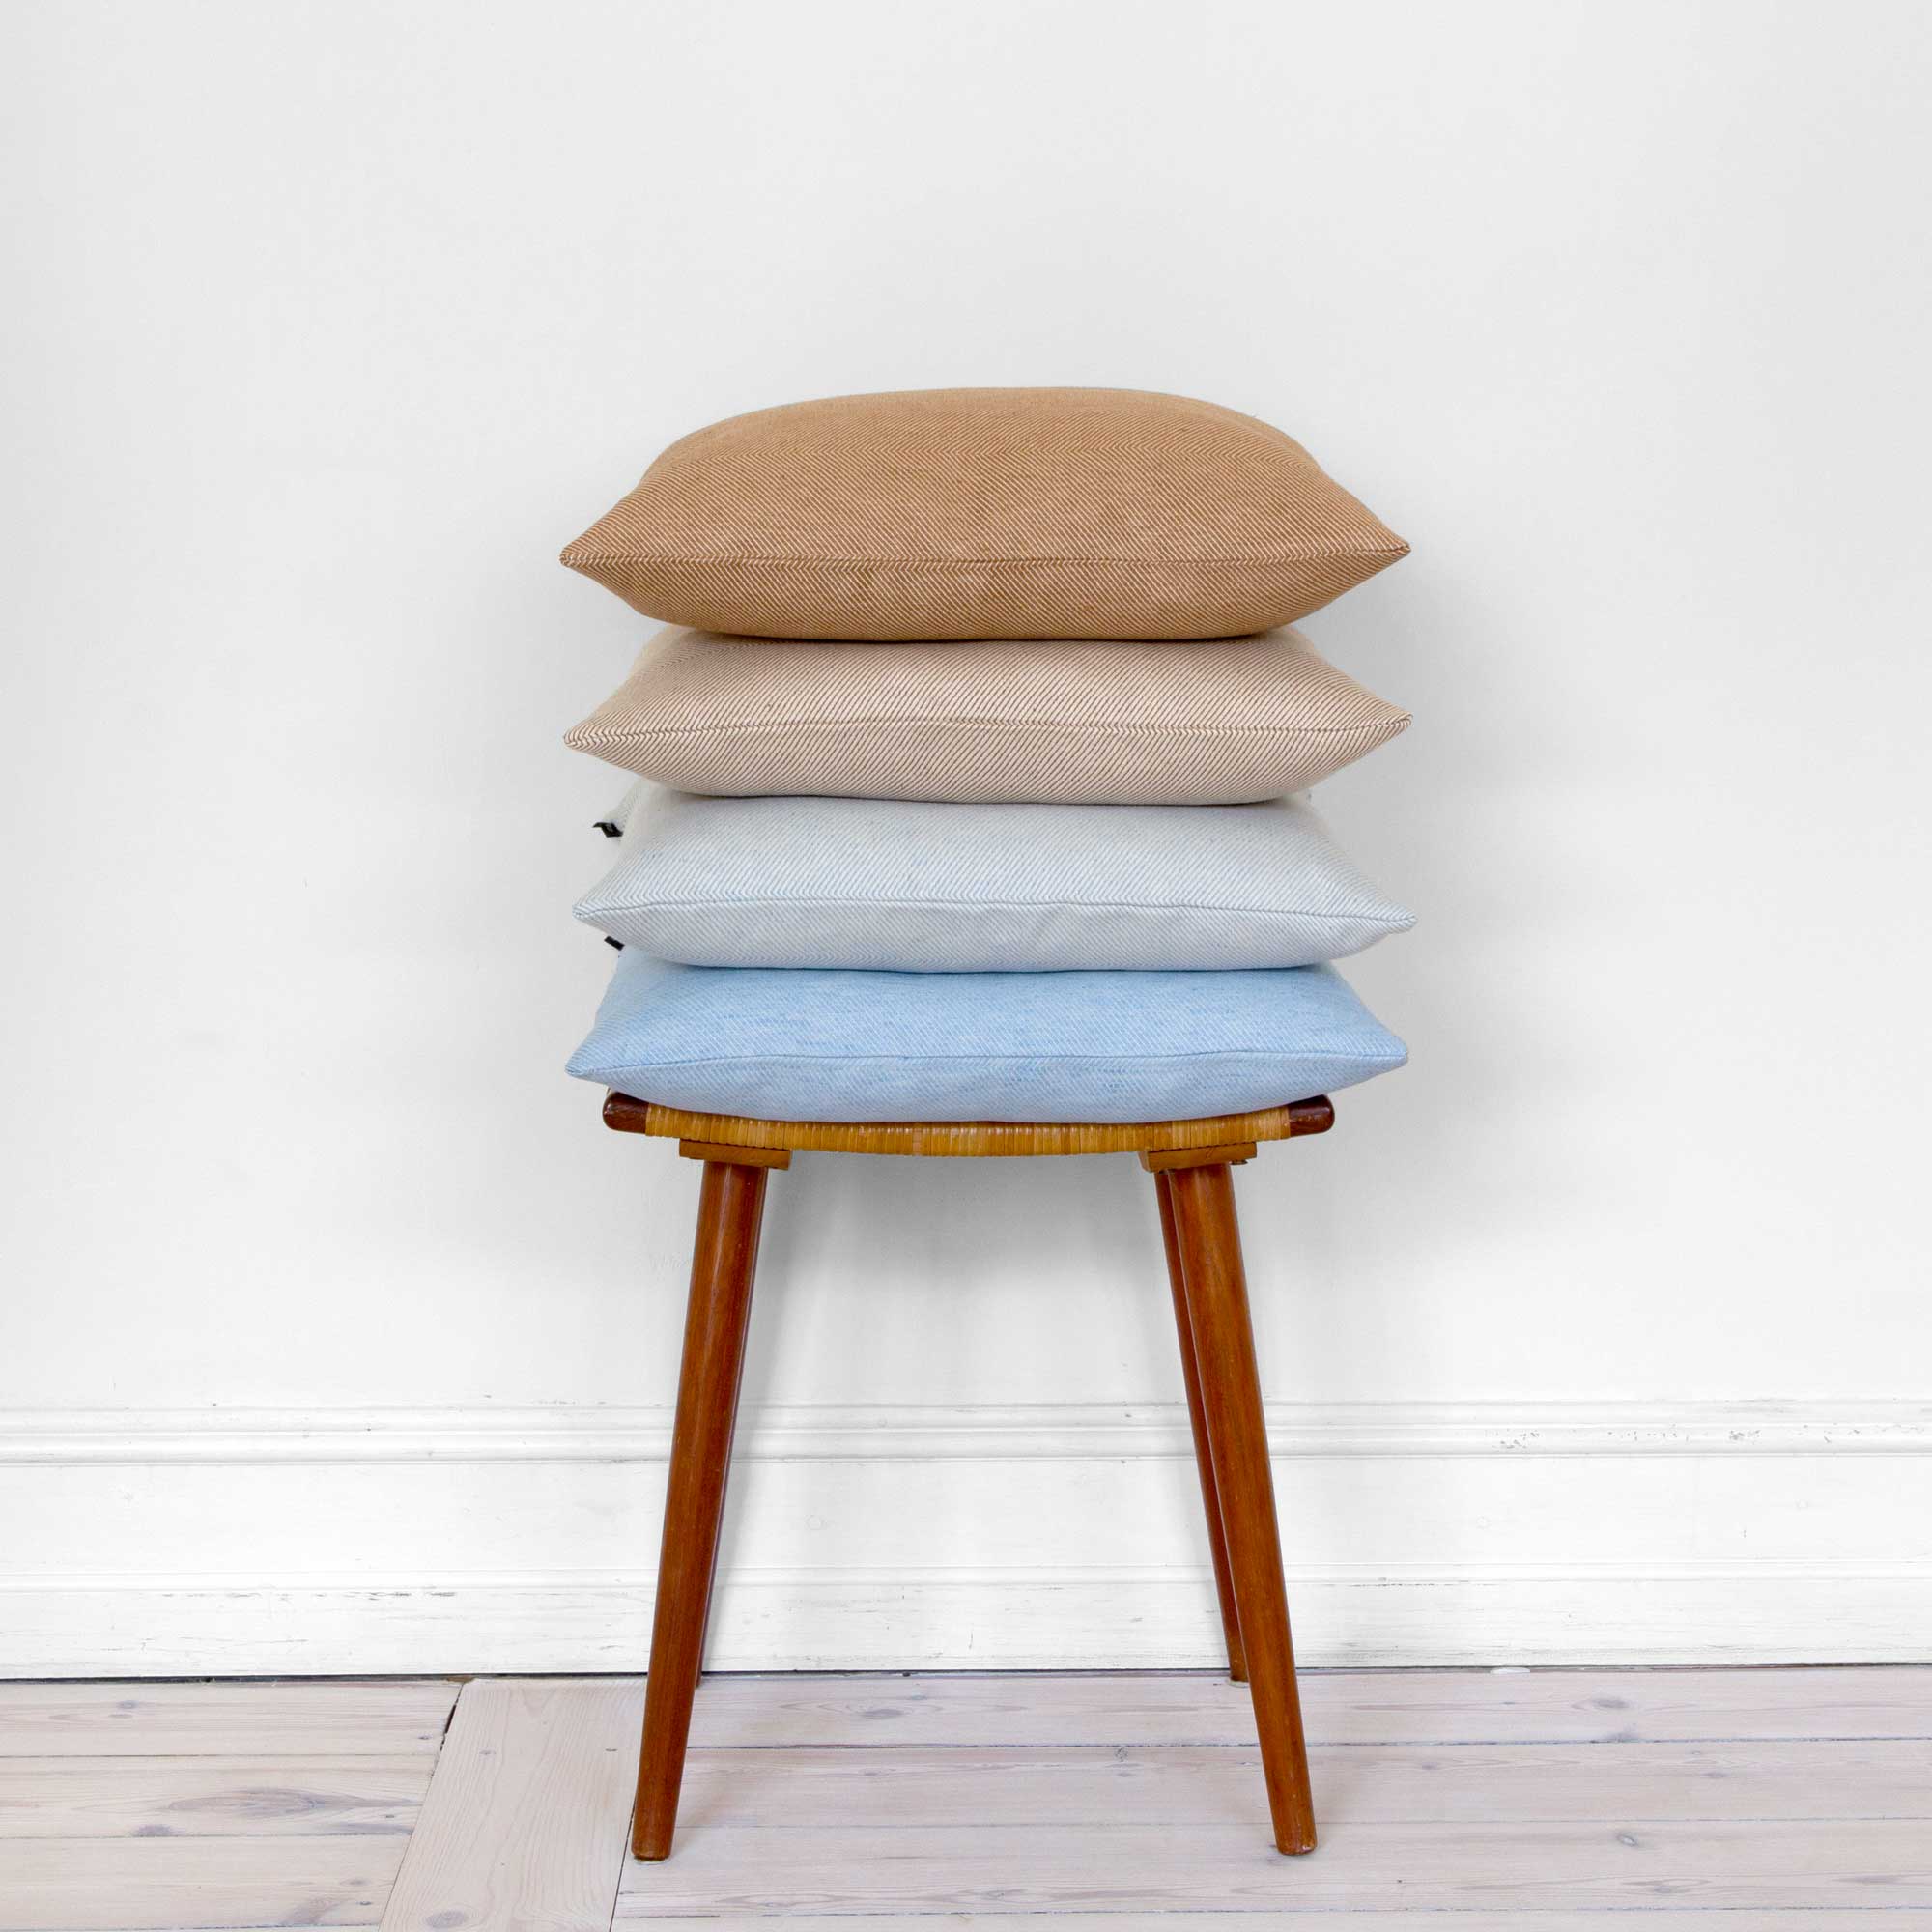 Square cushions, design by Anne Rosenberg, RosenbergCph